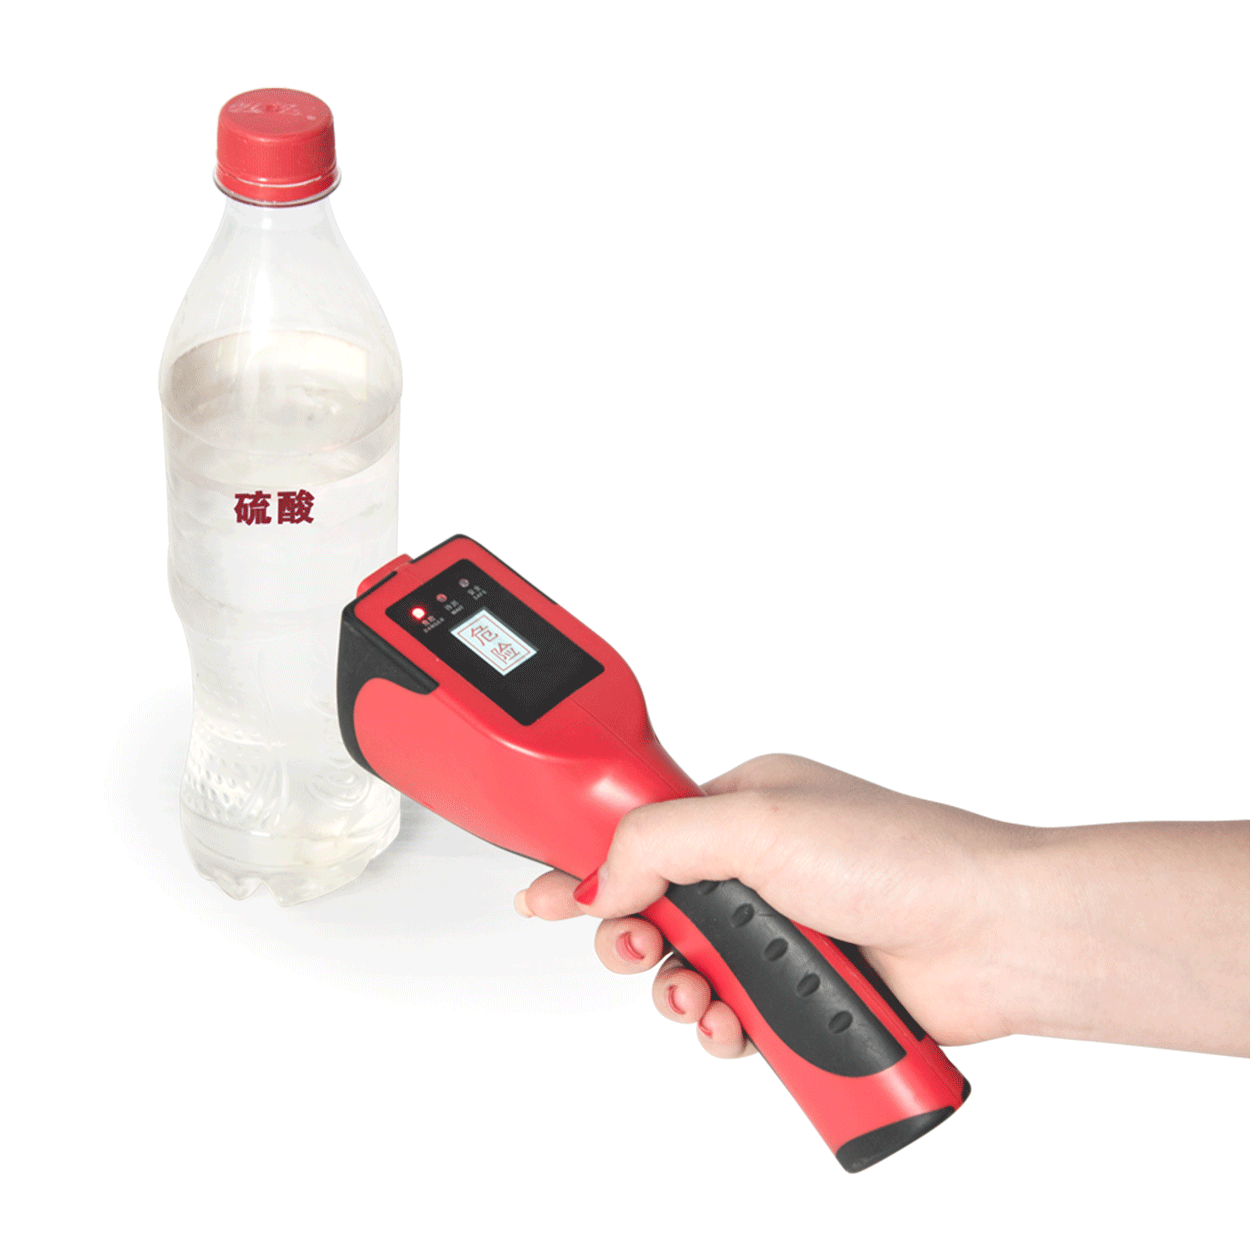 防爆危险液体检测仪不接触液体的情况下辨别出易燃易爆液体